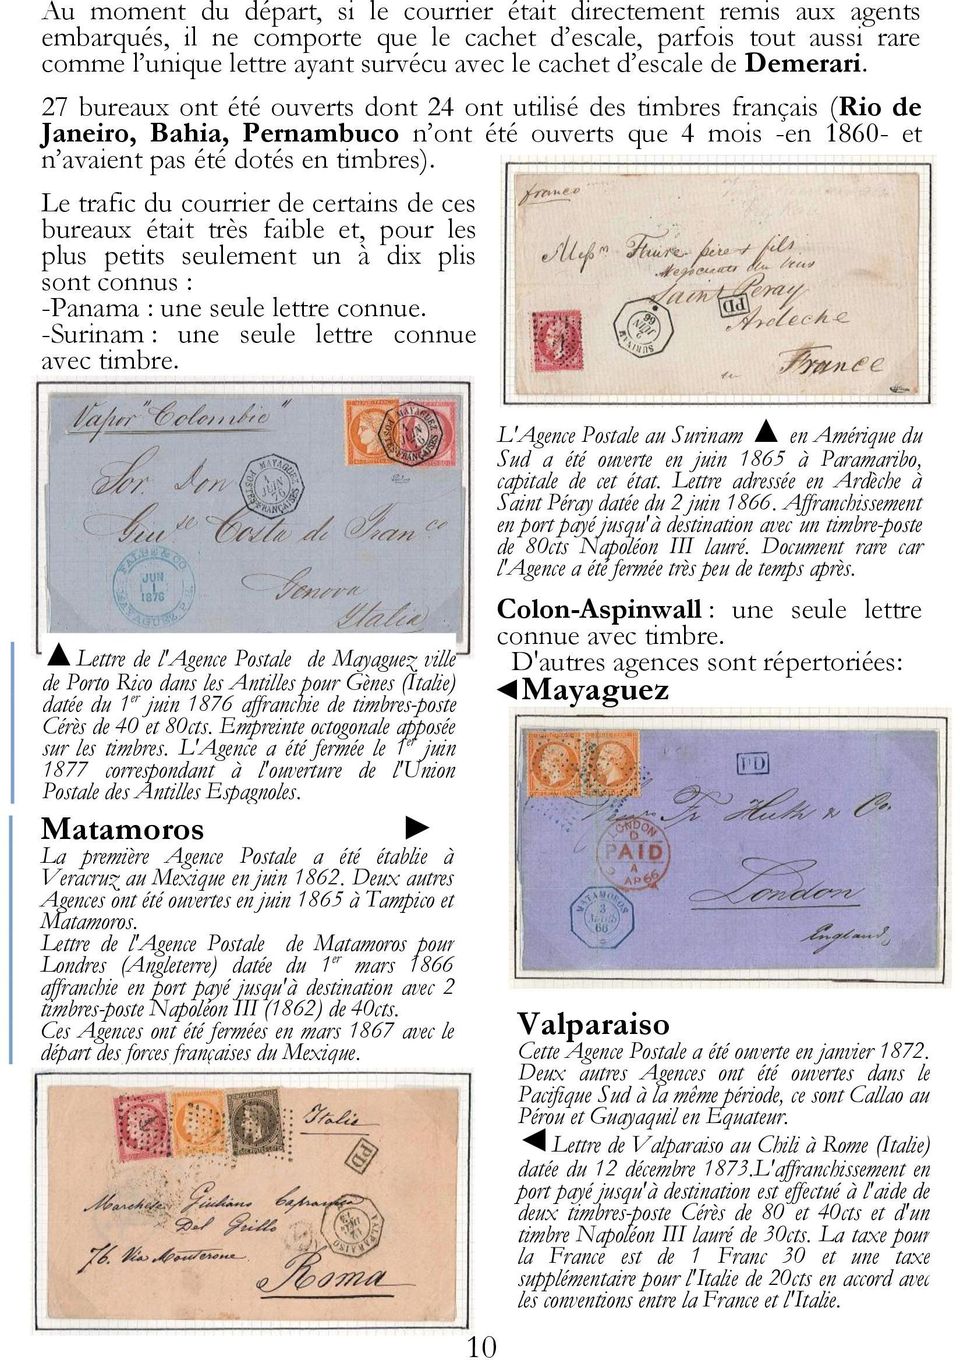 27 bureaux ont été ouverts dont 24 ont utilisé des timbres français (Rio de Janeiro, Bahia, Pernambuco n ont été ouverts que 4 mois -en 1860- et n avaient pas été dotés en timbres).